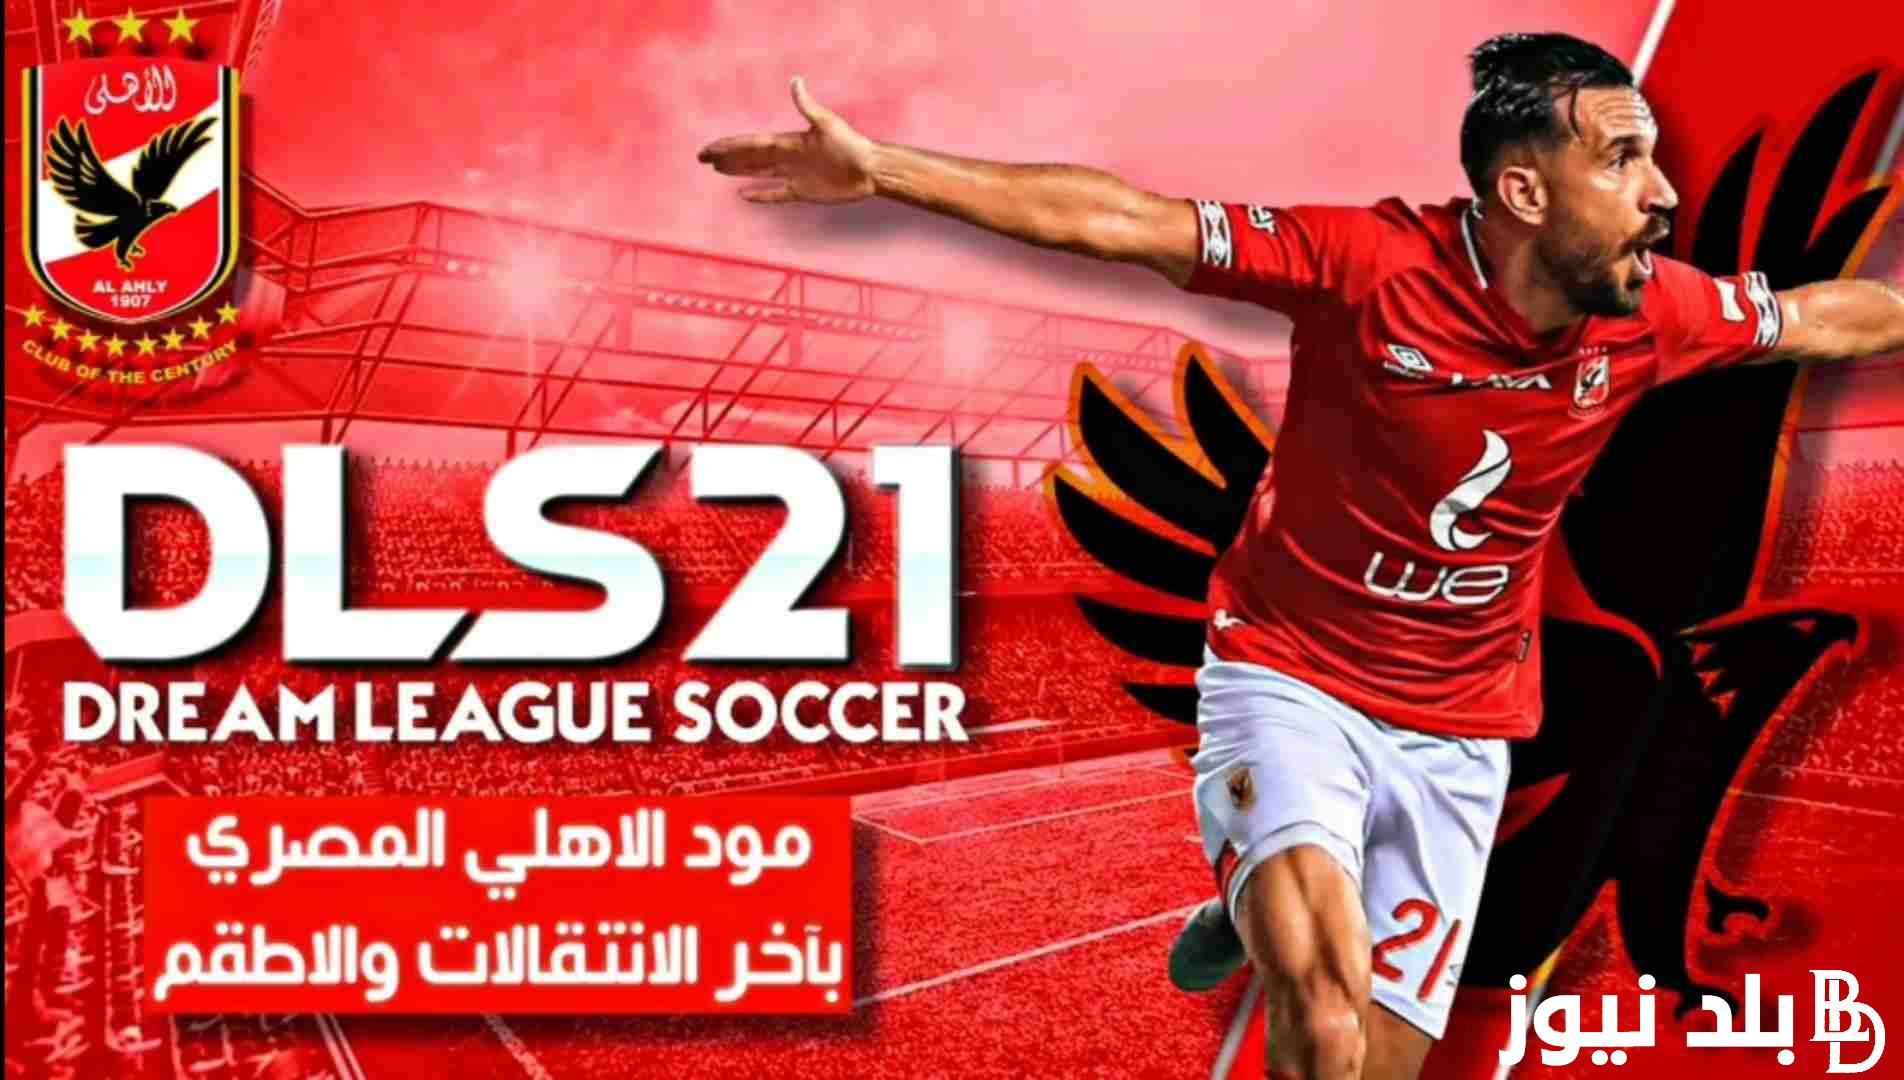 “与你的朋友一起玩” 下载适用于 Android 和 iPhone 的 Dream League 2024 模式 Al-Ahly 和 Zamalek 以及游戏最重要的功能